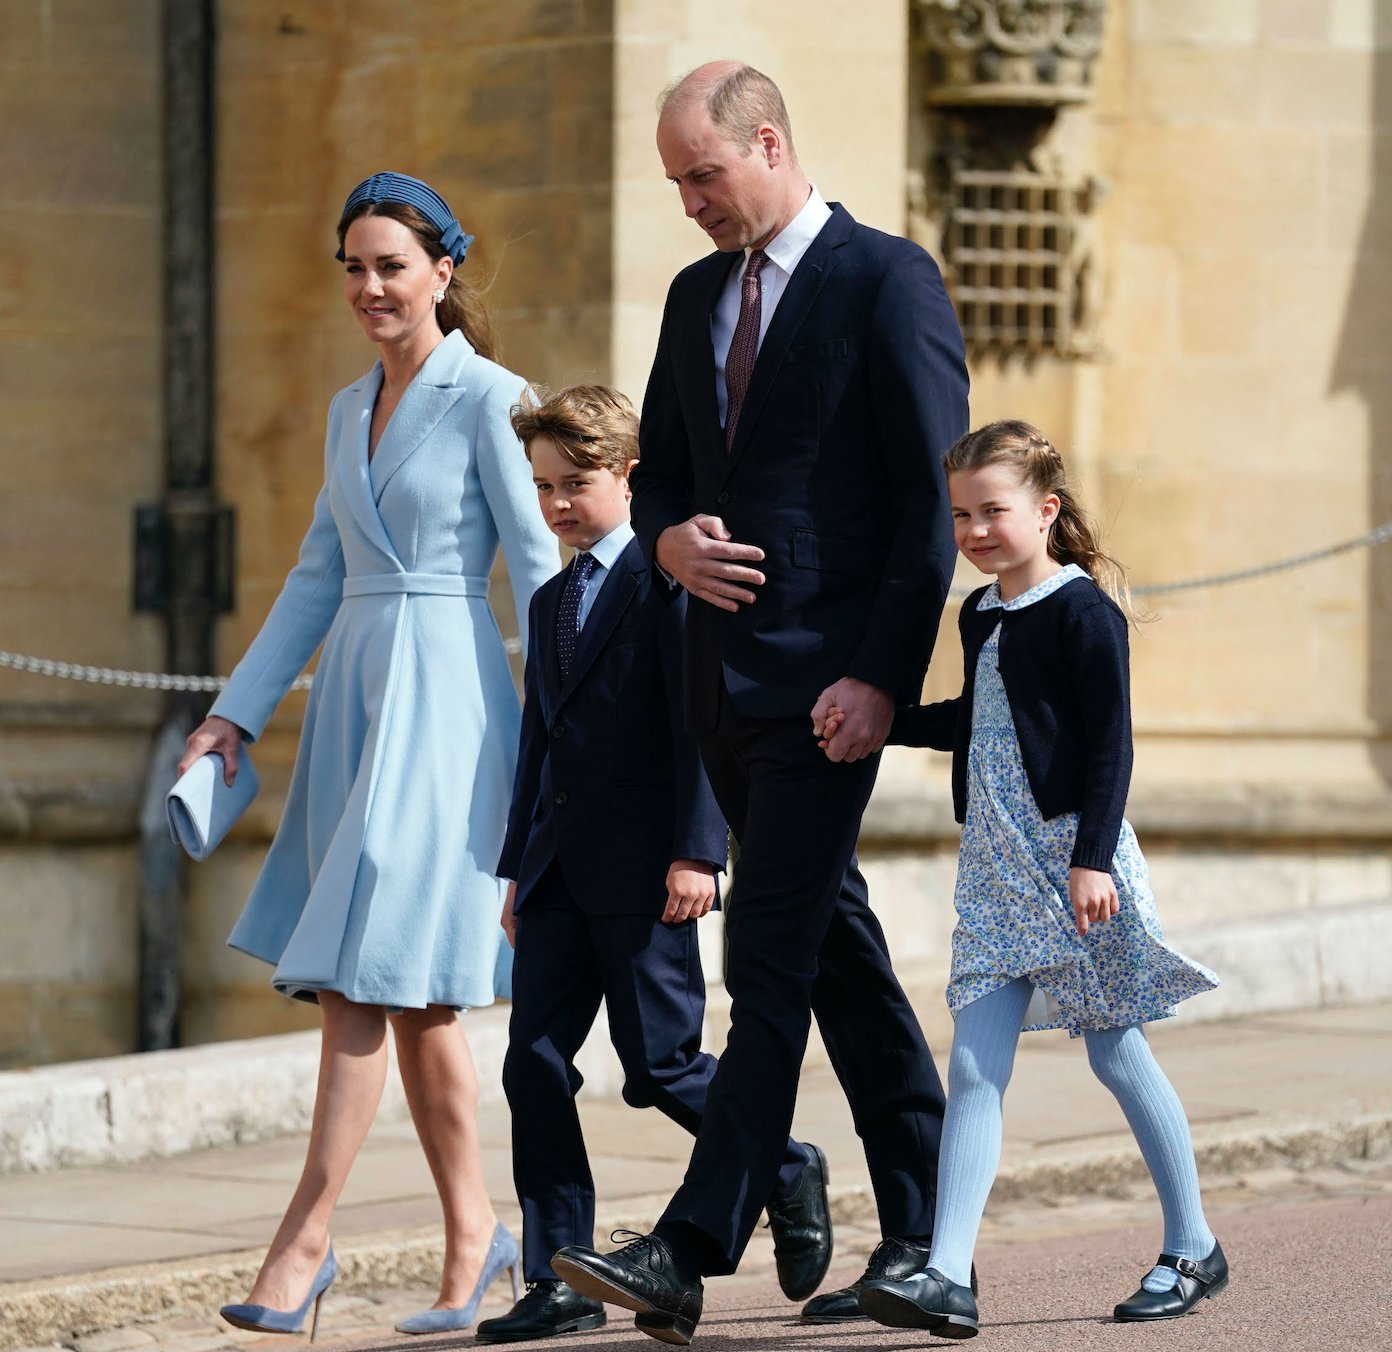 Принц Уильям и Кейт Миддлтон с детьми побывали на Пасхальной службе в часовне Виндзора